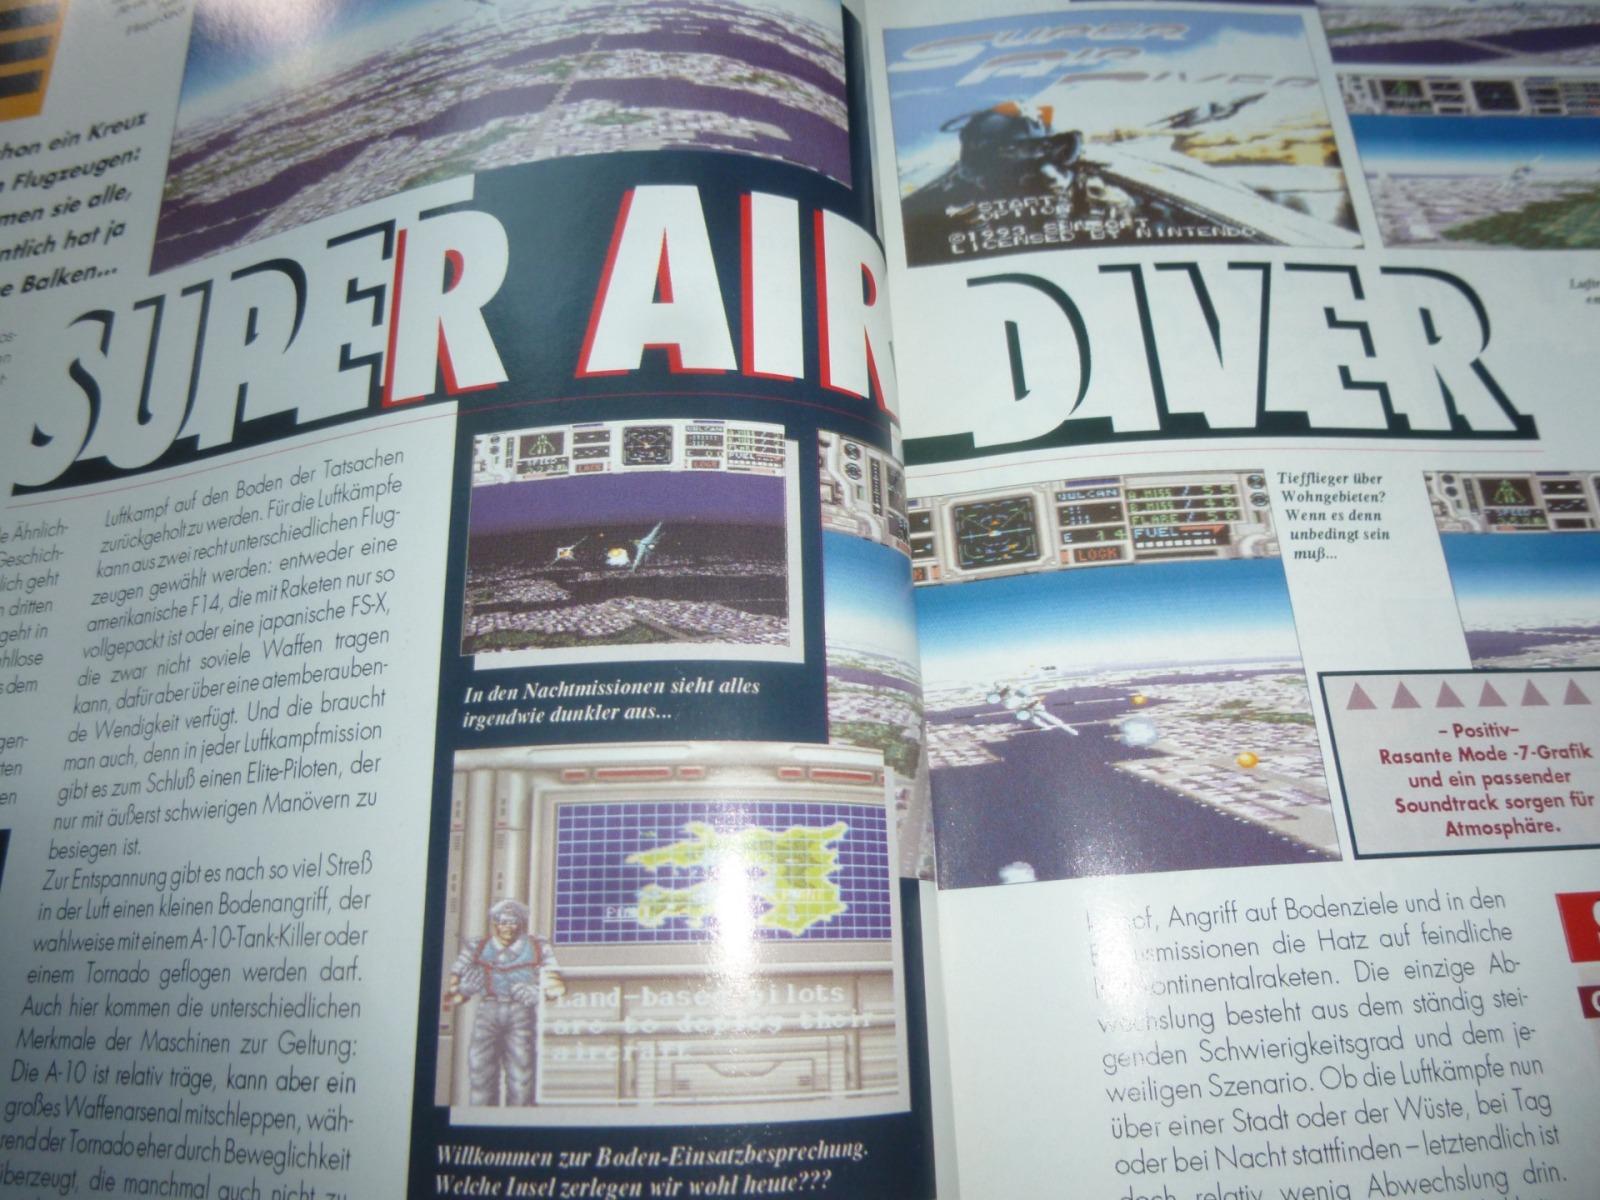 TOTAL Das unabhängige Magazin - 100% Nintendo - Ausgabe 12/93 1993 16